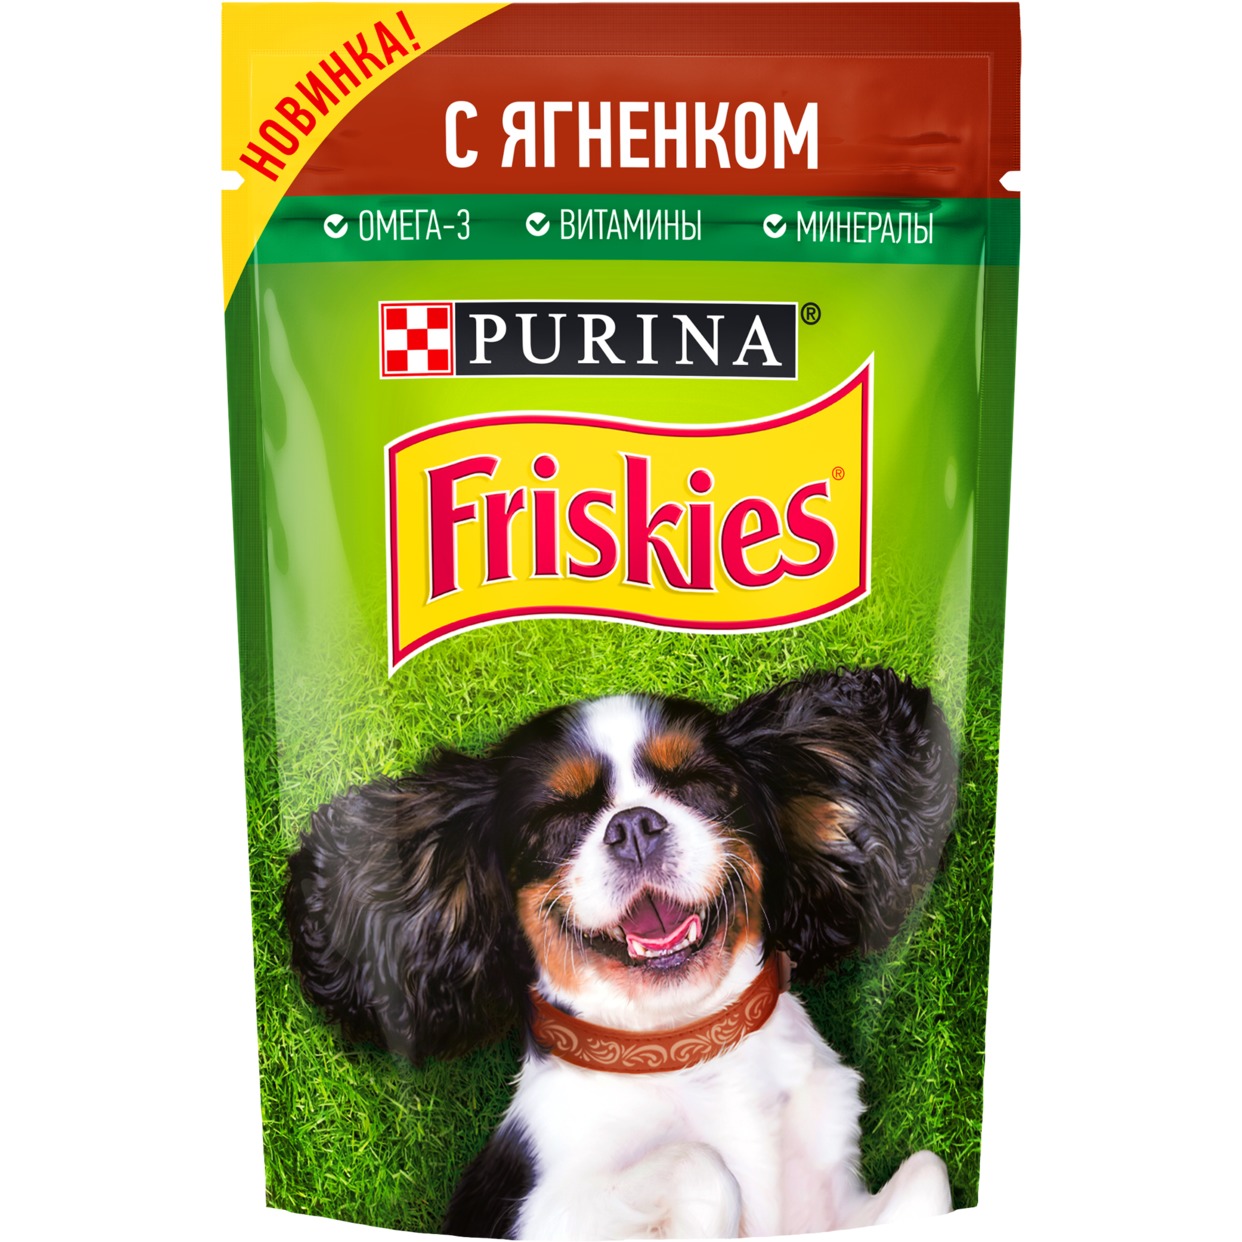 Корм для собак Friskies с ягненком в подливе 85г по акции в Пятерочке